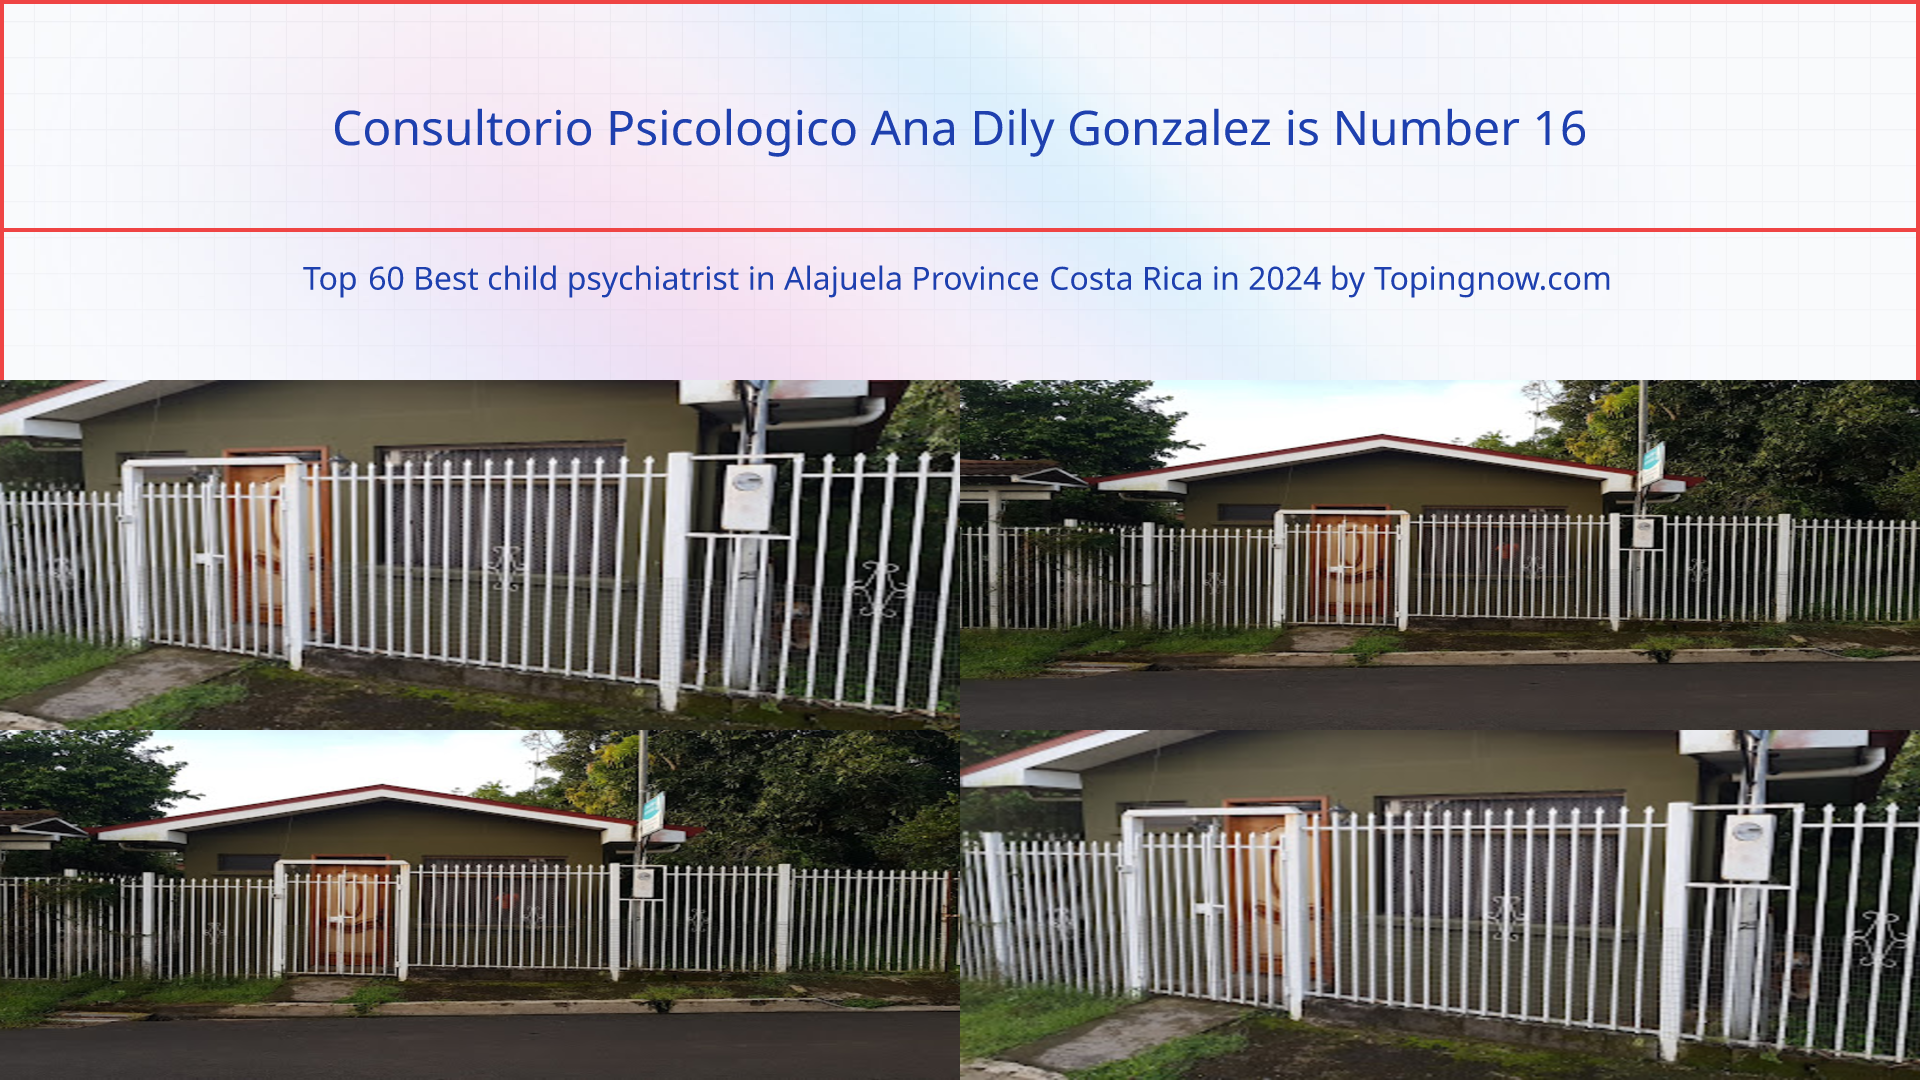 Consultorio Psicologico Ana Dily Gonzalez: Top 60 Best child psychiatrist in Alajuela Province Costa Rica in 2024